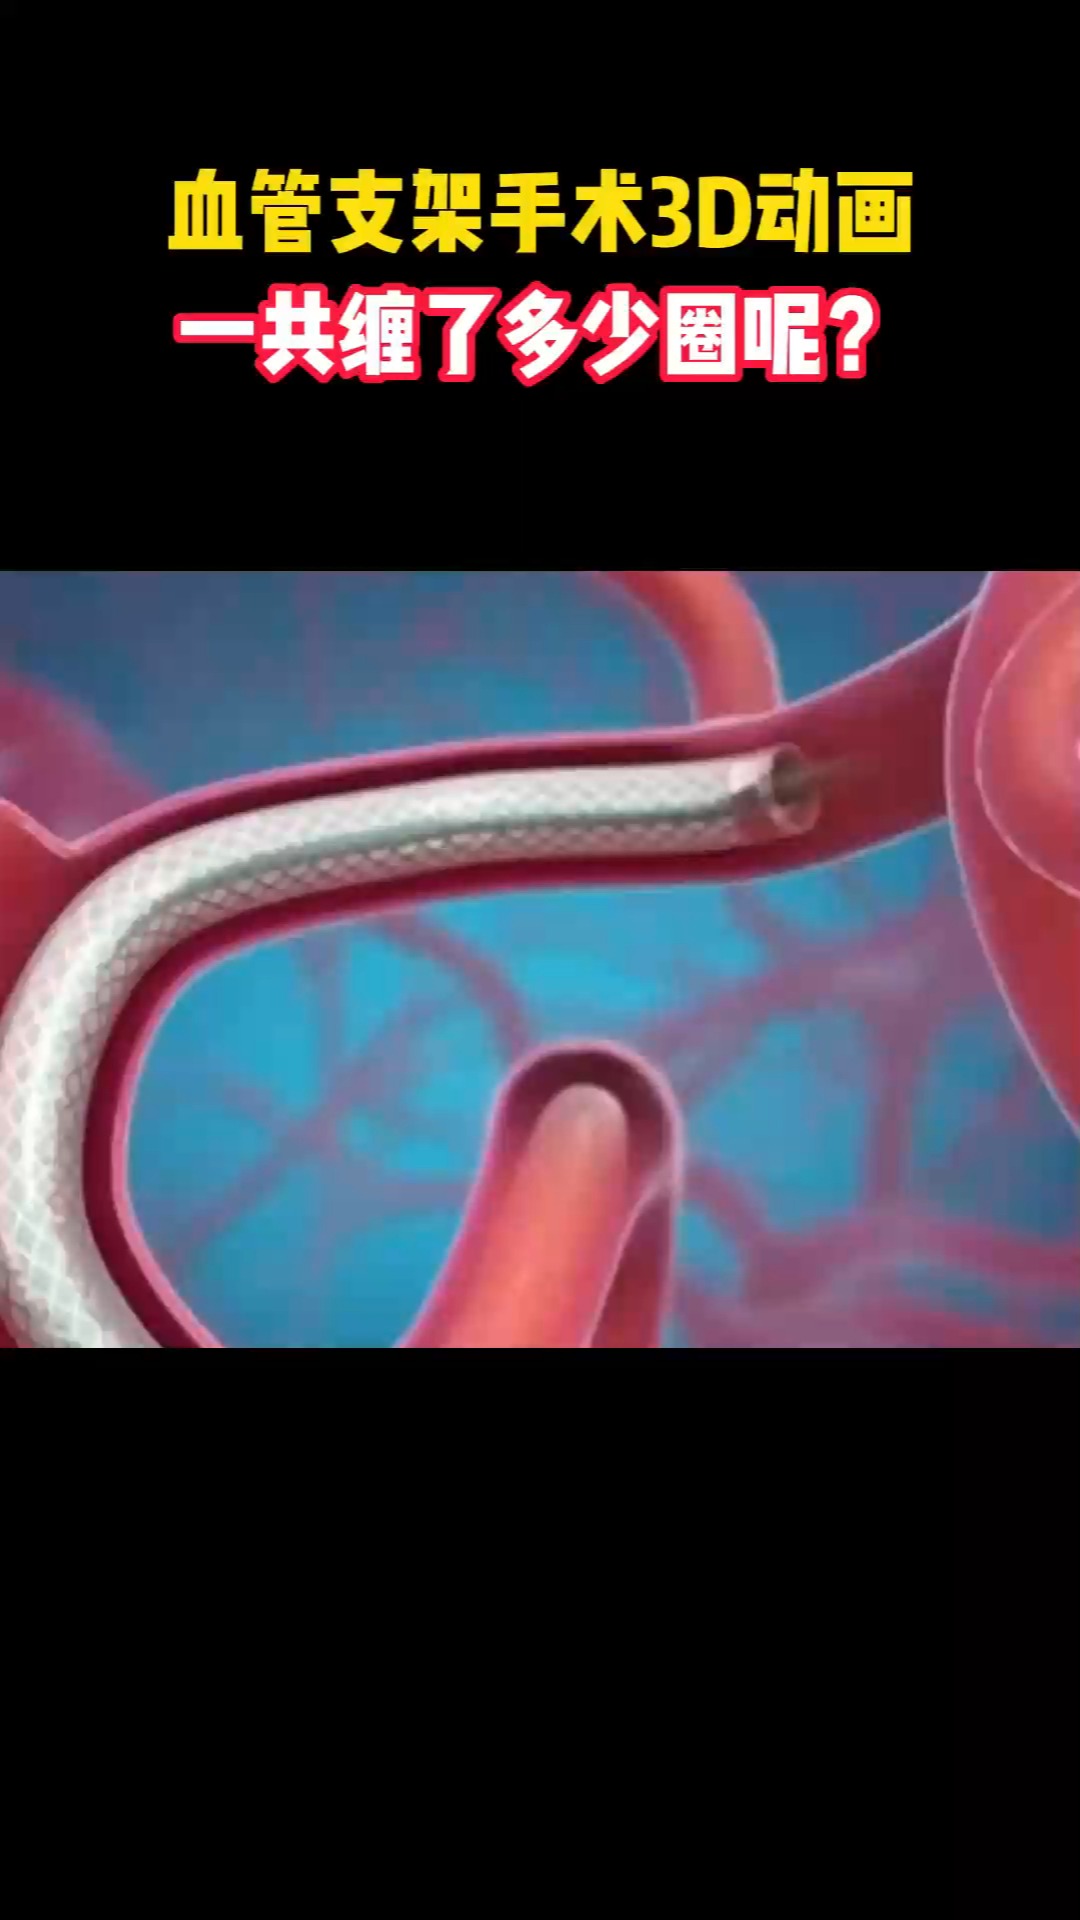 血管支架手术3D动画